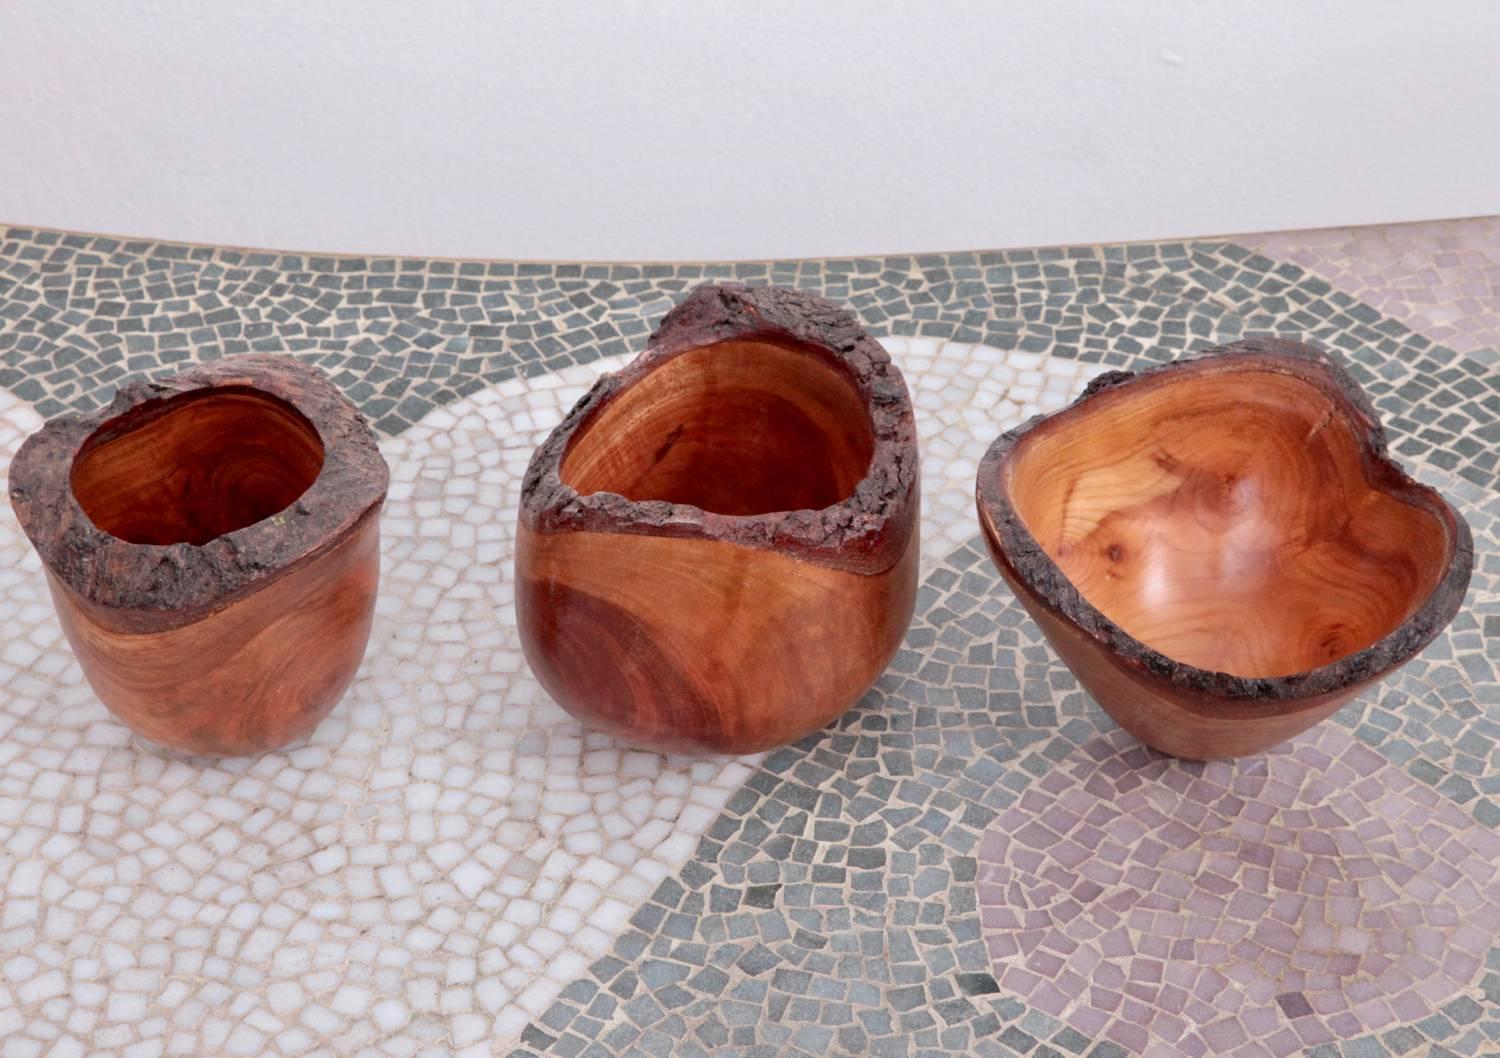 Set of three turned cheerywood bowls with natural bark.

